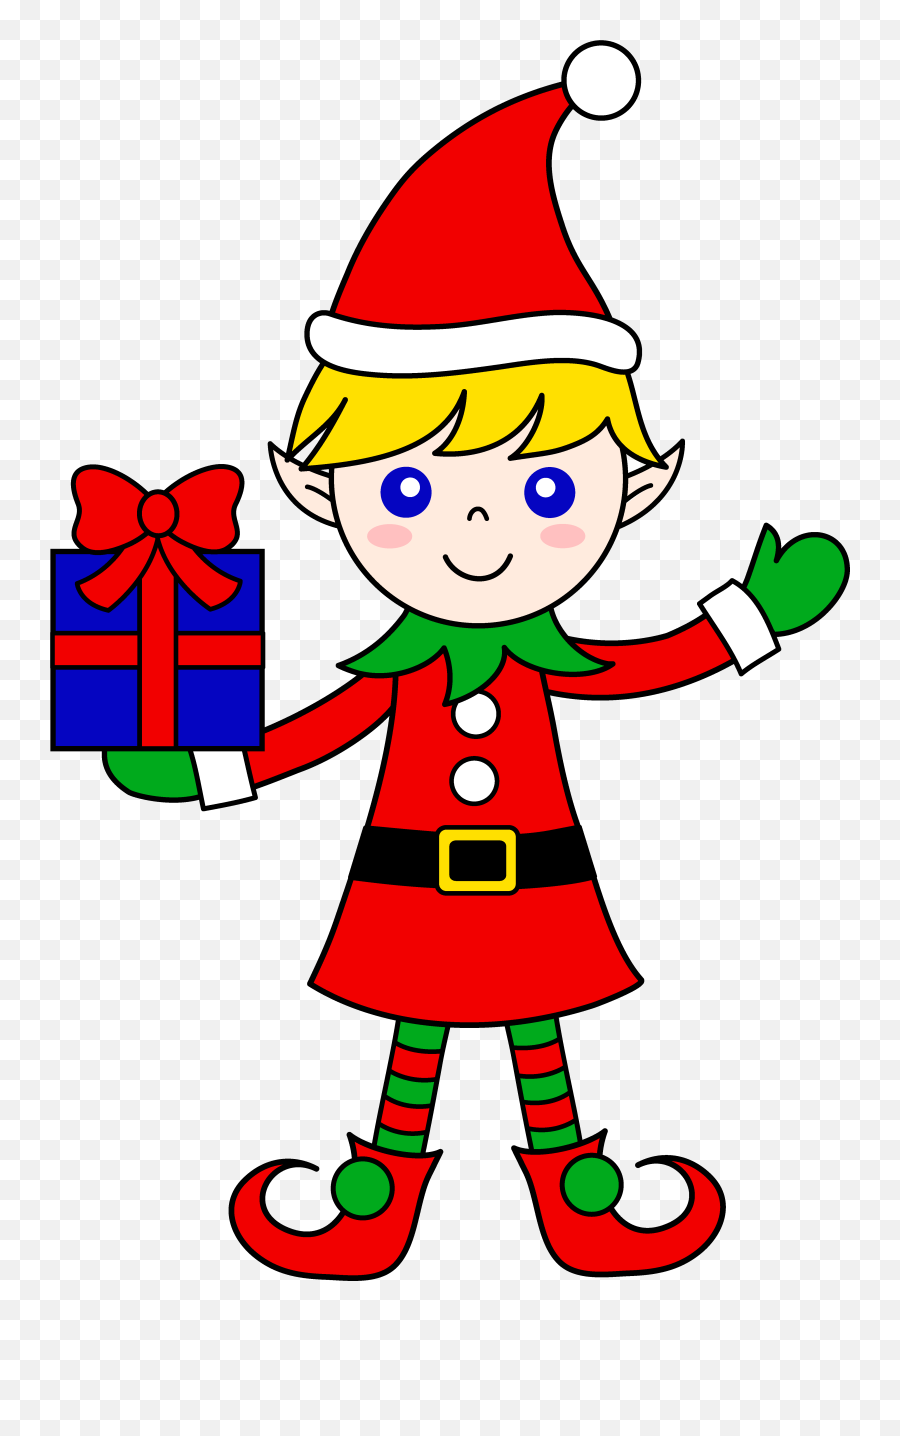 Free Elf - Elf Cute Christmas Drawings Easy,Elf On The Shelf Png